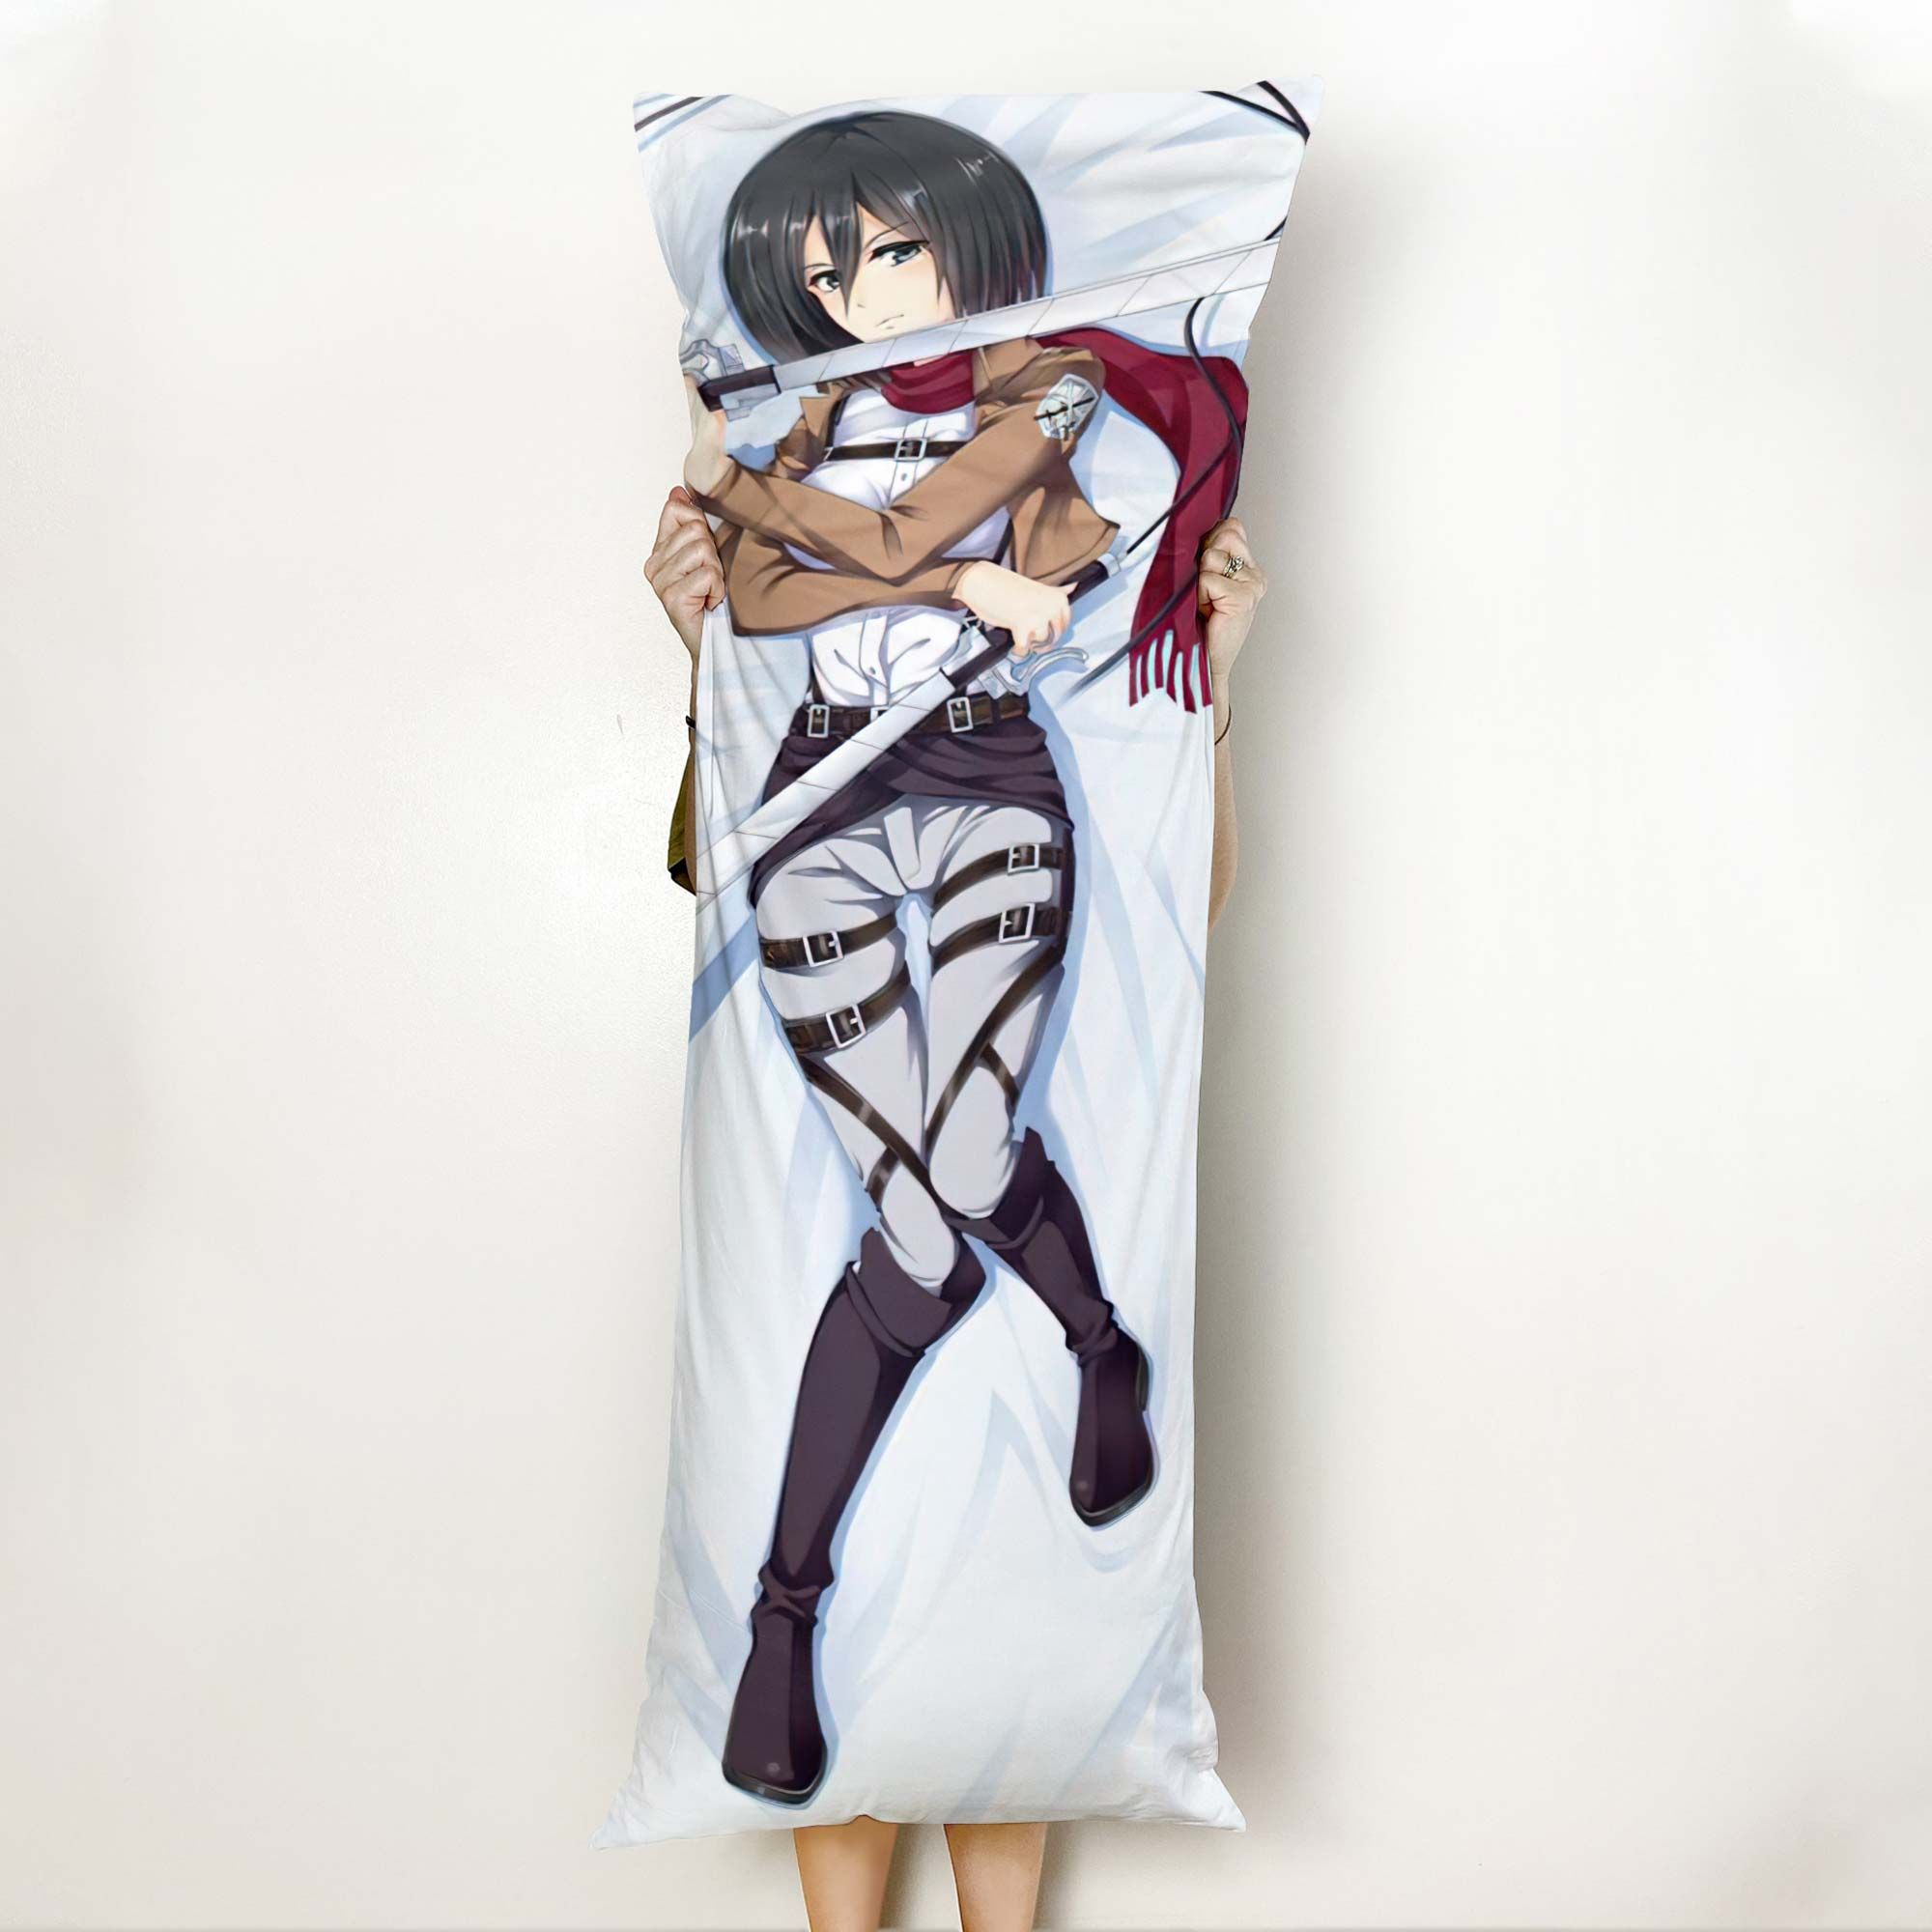 AOT Mikasa Ackerman Body Pillow Cover Anime Gifts Idea For Otaku Girl Official Merch GO0110